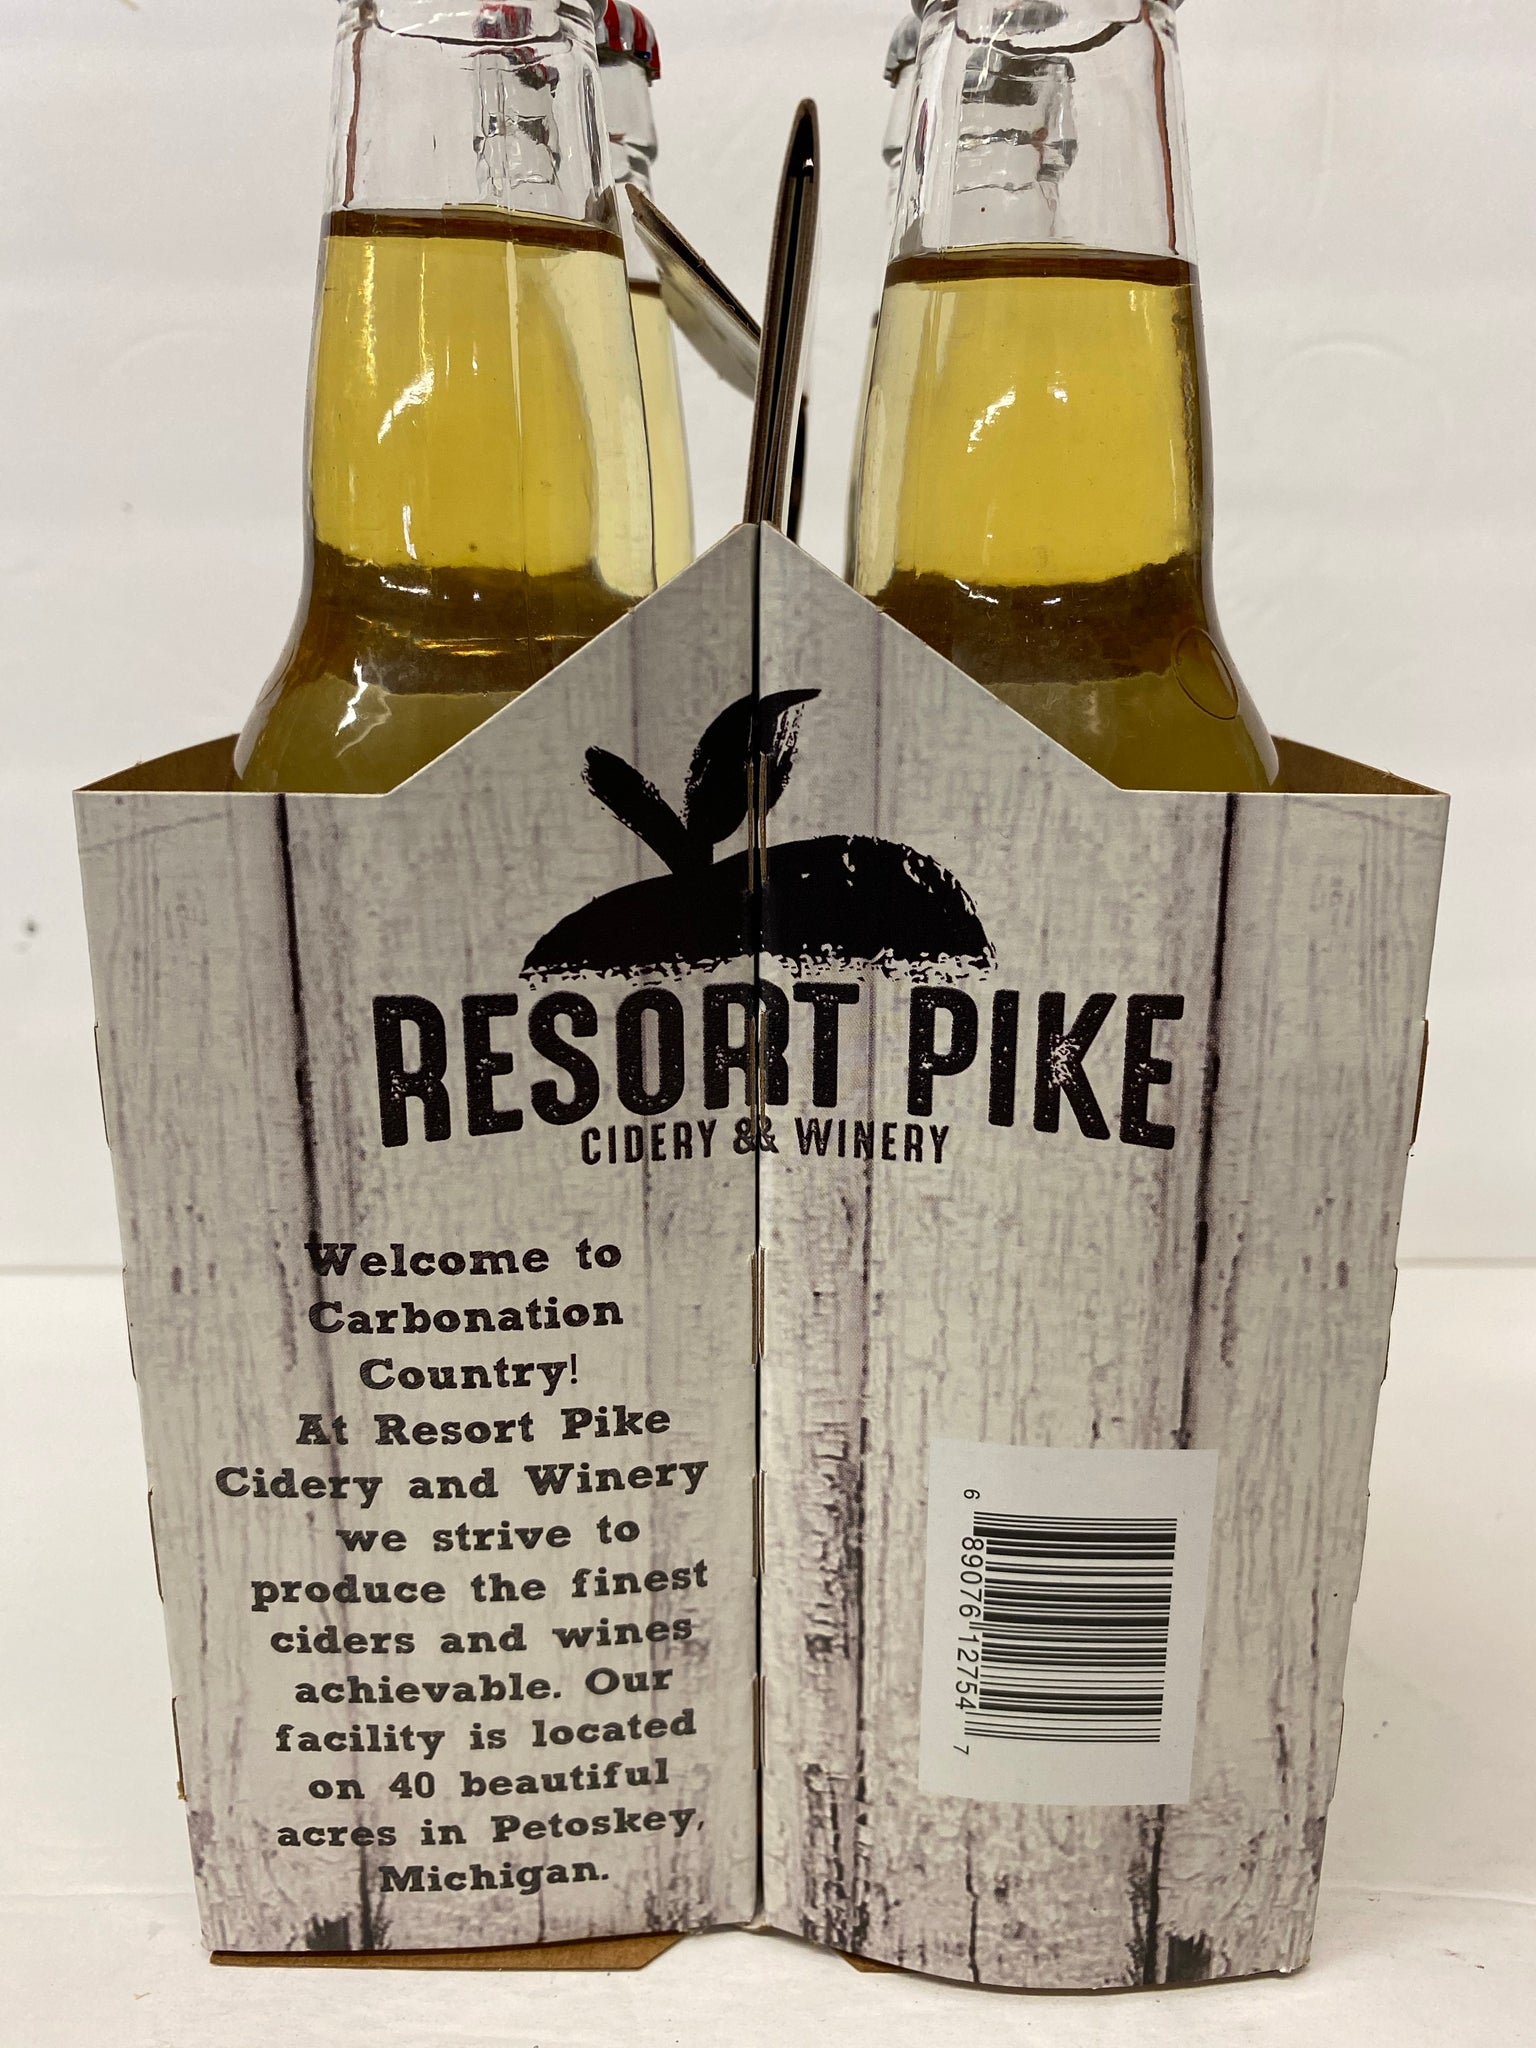 Resort Pike Hard Cider